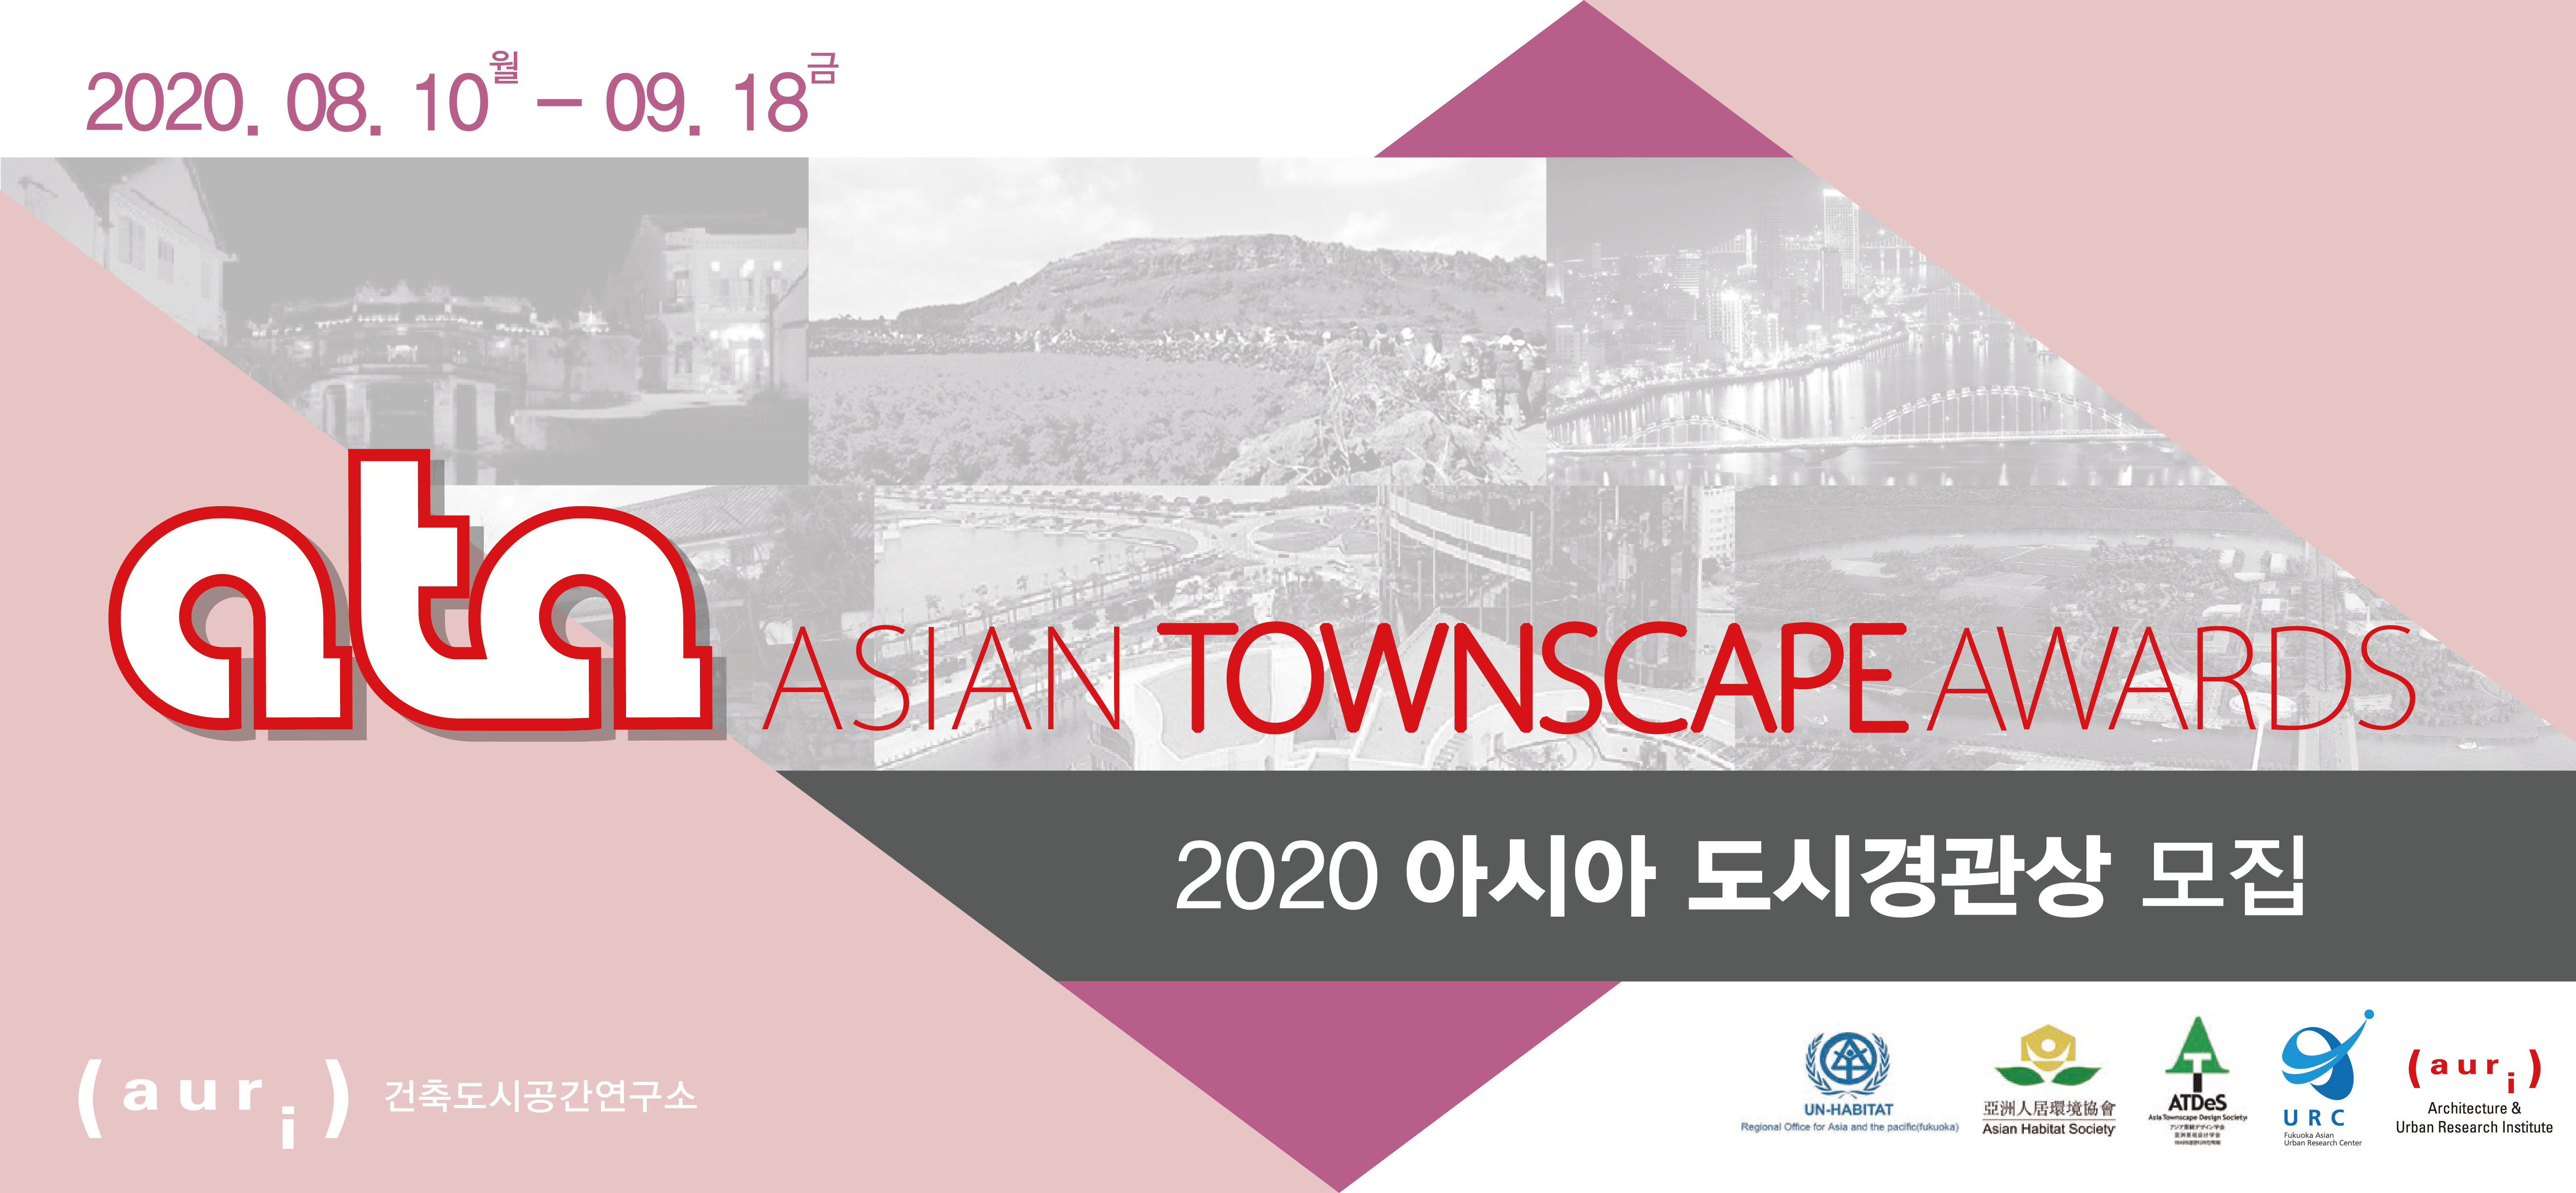     2020.08.10 월 - 09.18 금     ata ASIAN TOWNSCAPE AWARDS     2020 아시아 도시경관상 모집     auri 건축도시공간연구소